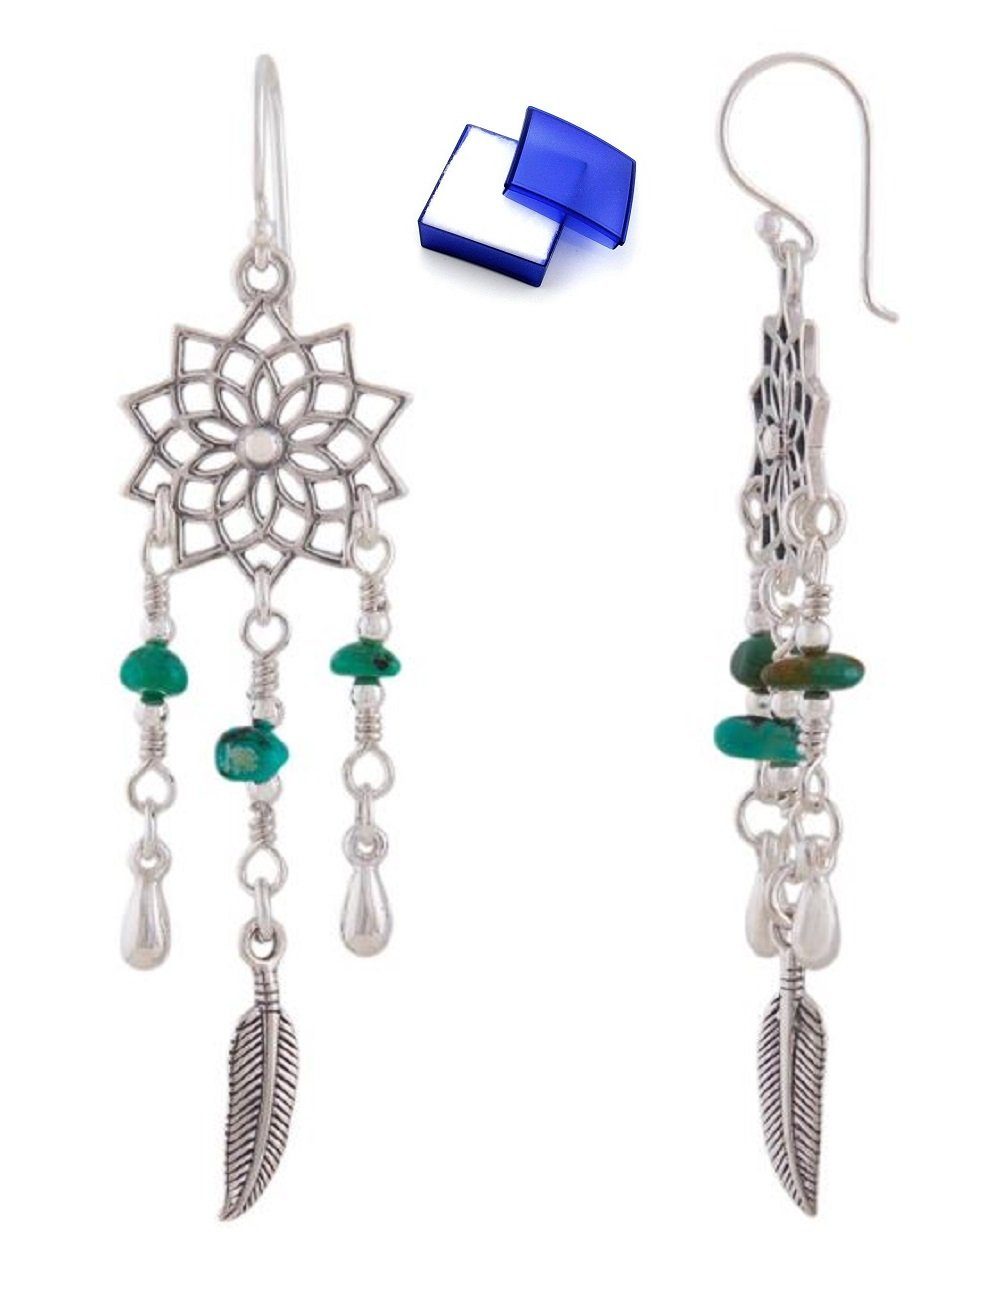 unbespielt Paar Ohrhänger Ohrringe Mandala mit Federn u. kl.Türkis-Steinen 925 Silber 62 x 16 mm, Silberschmuck für Damen